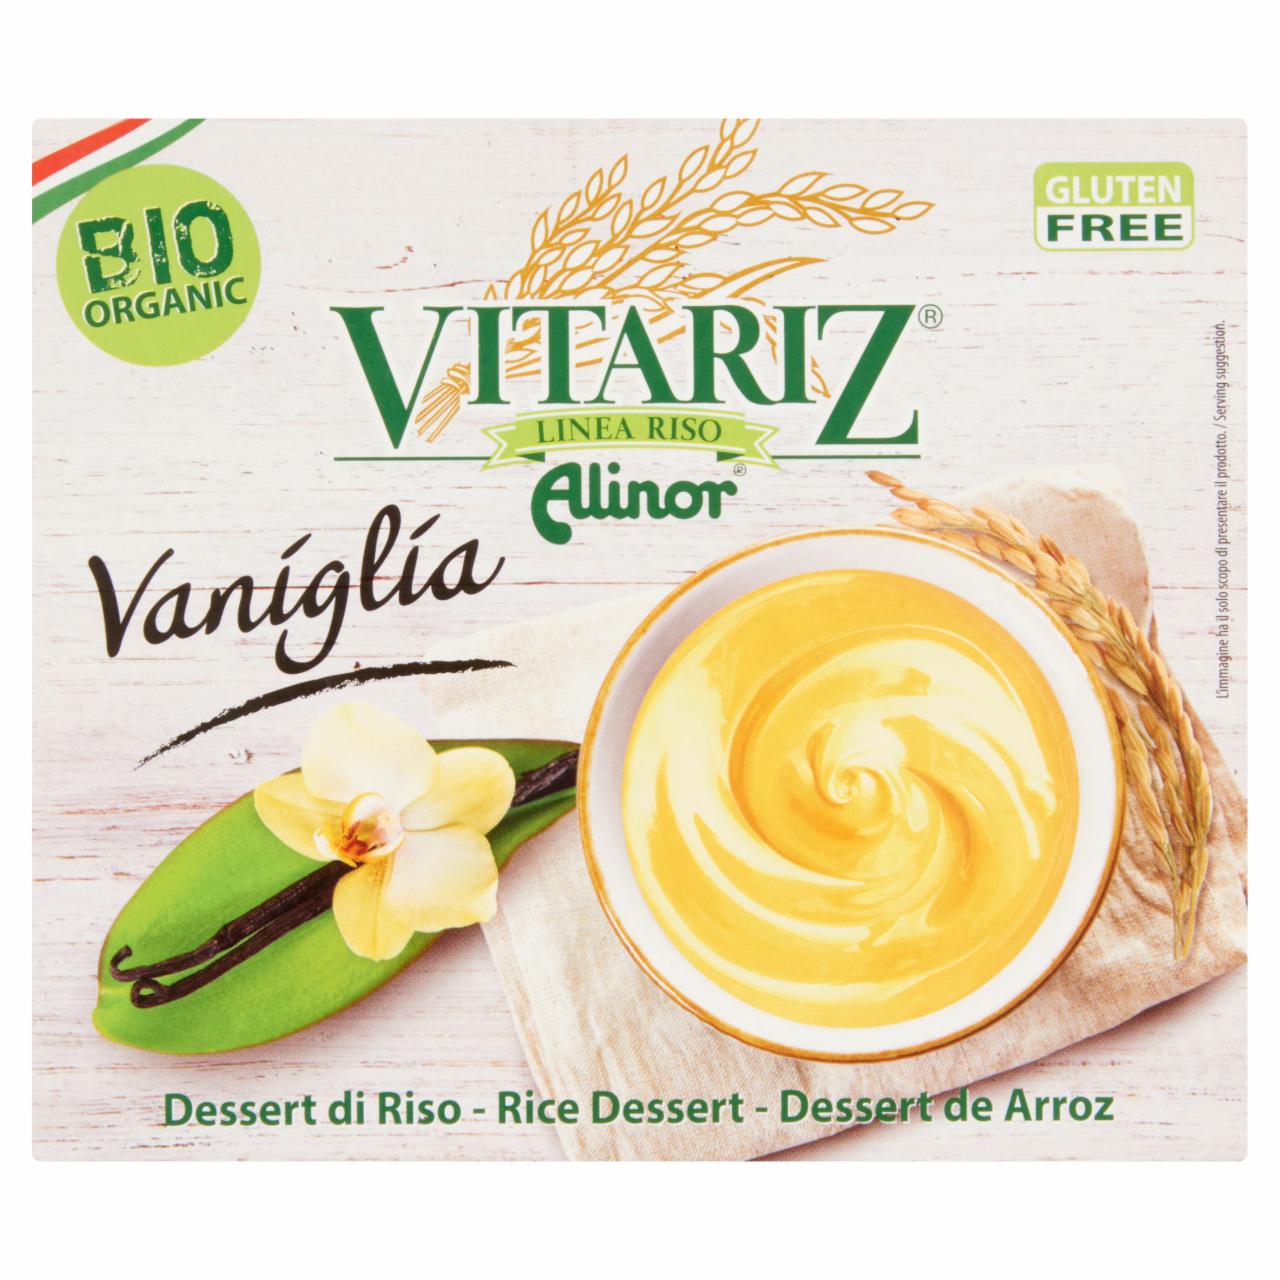 Képek - Vitariz BIO UHT vaníliás rizsdesszert 4 x 100 g